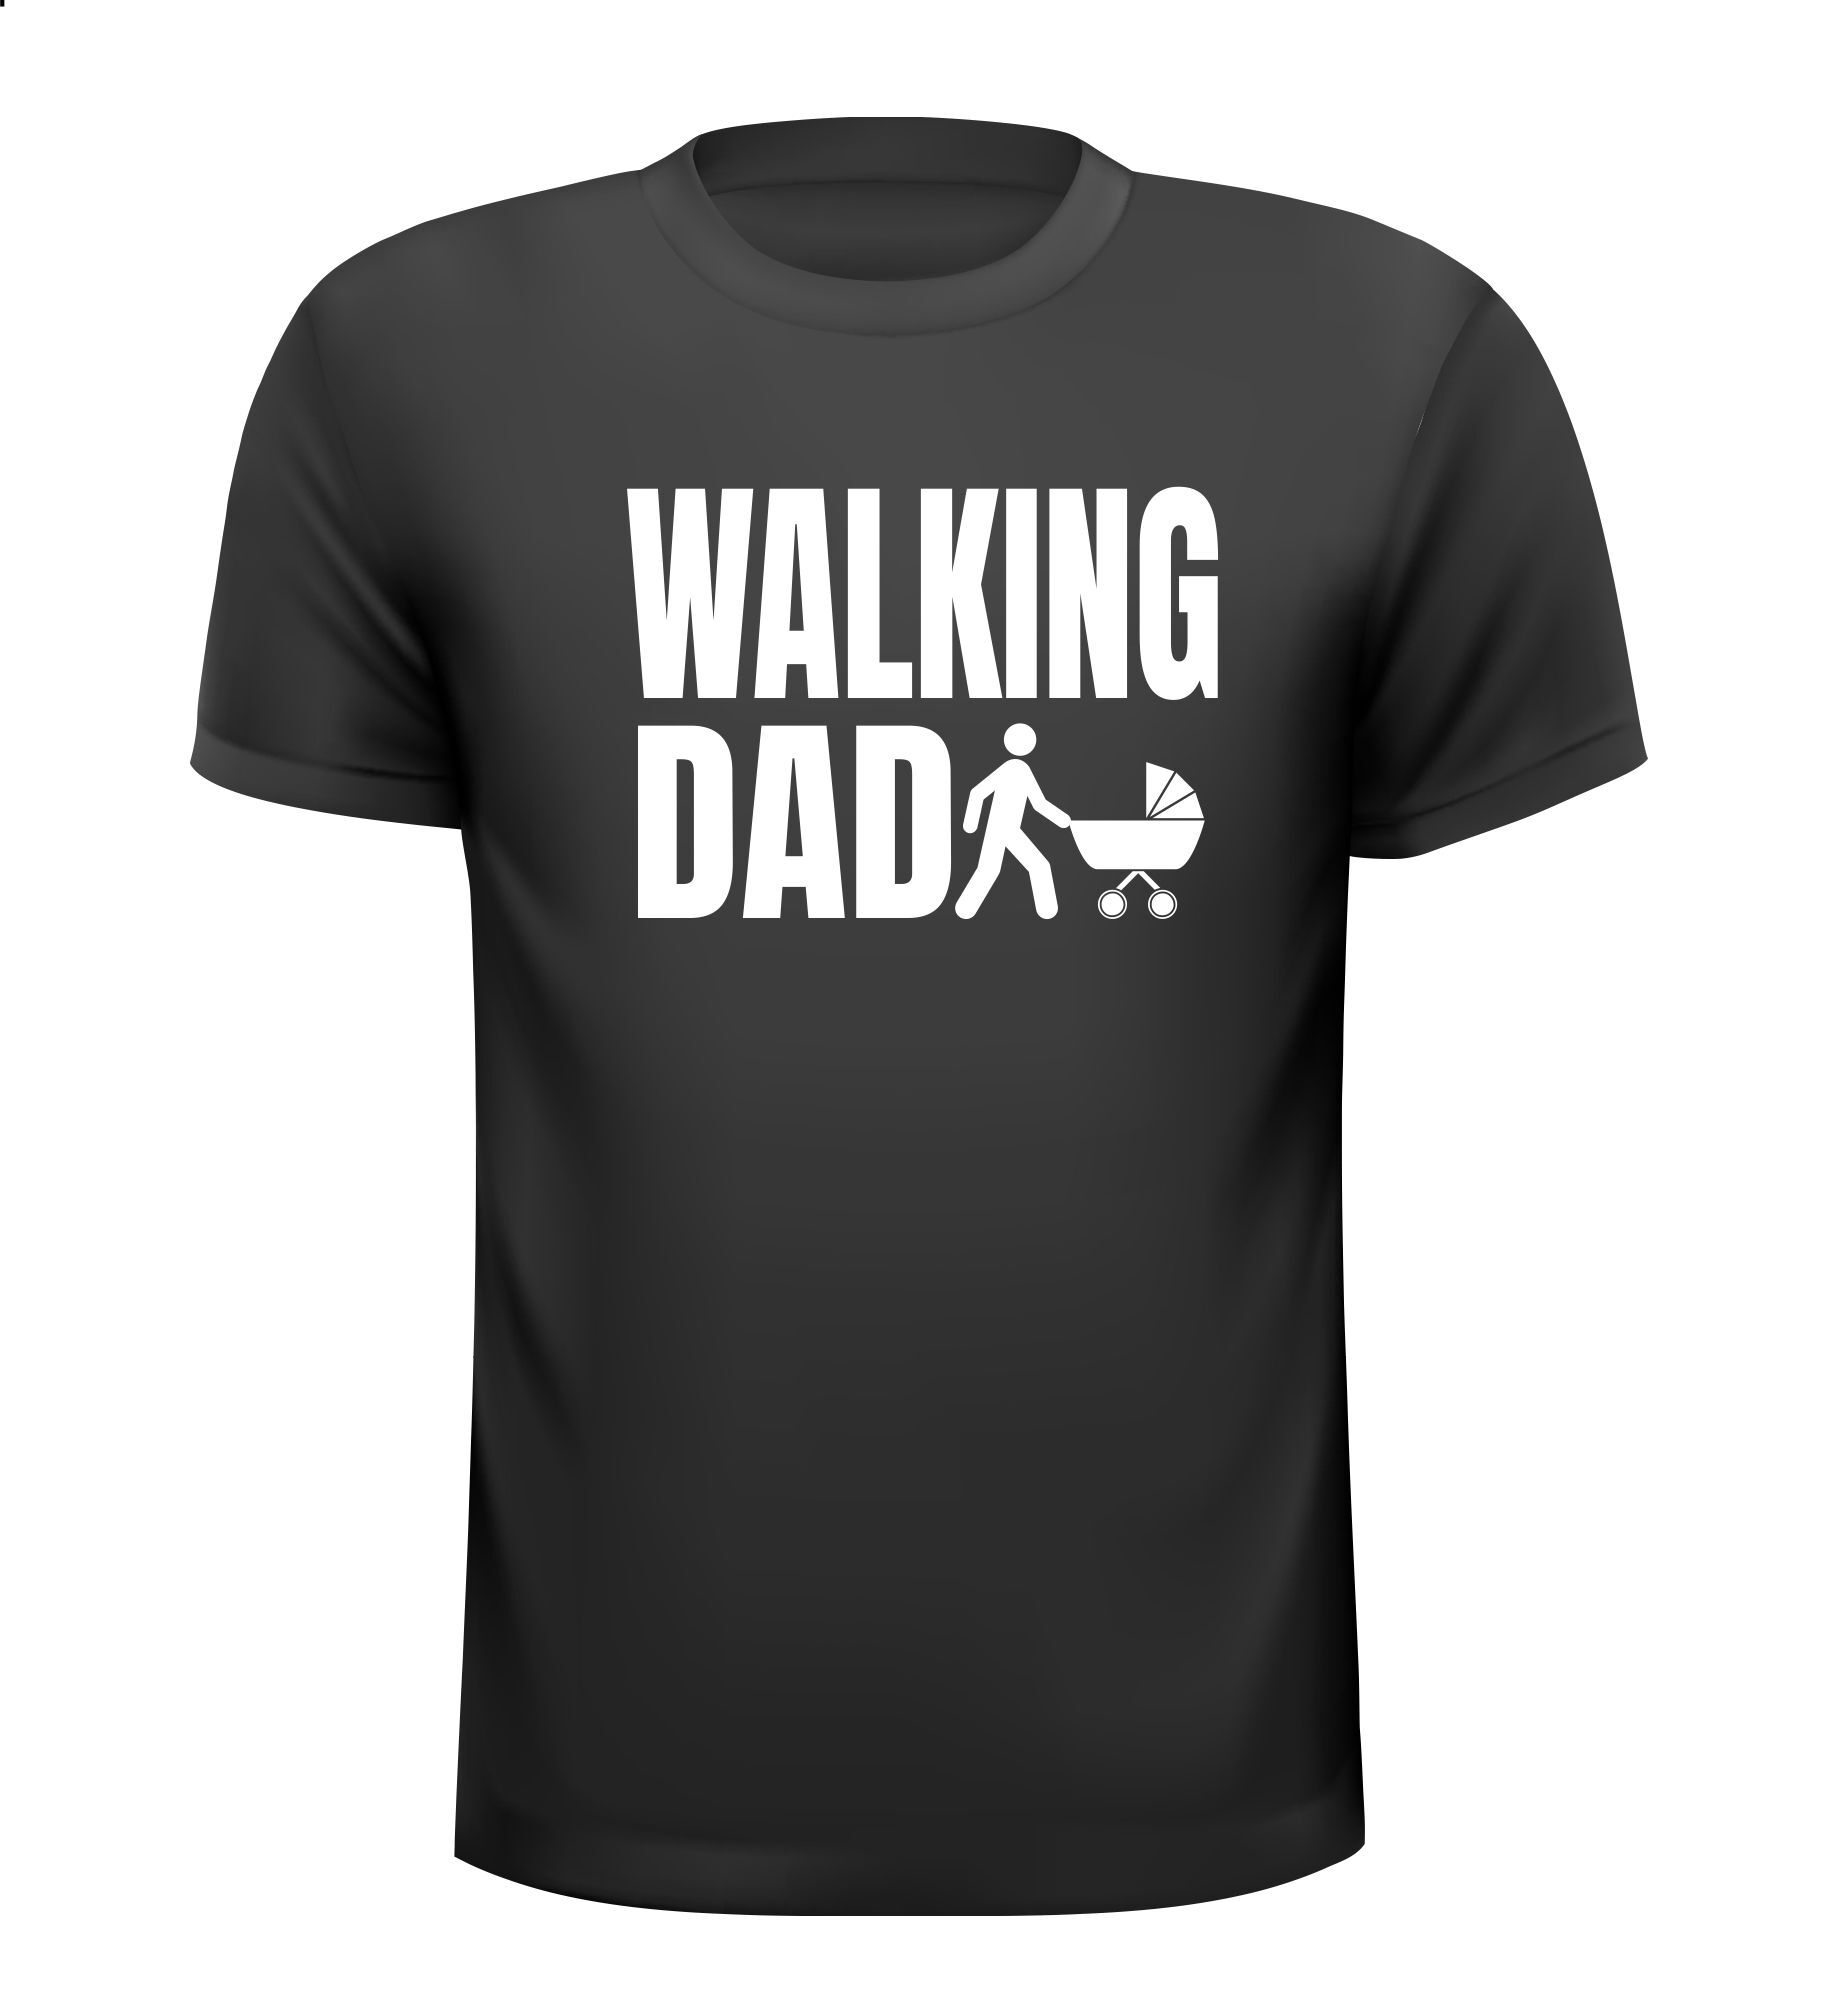 Walking dad shirt